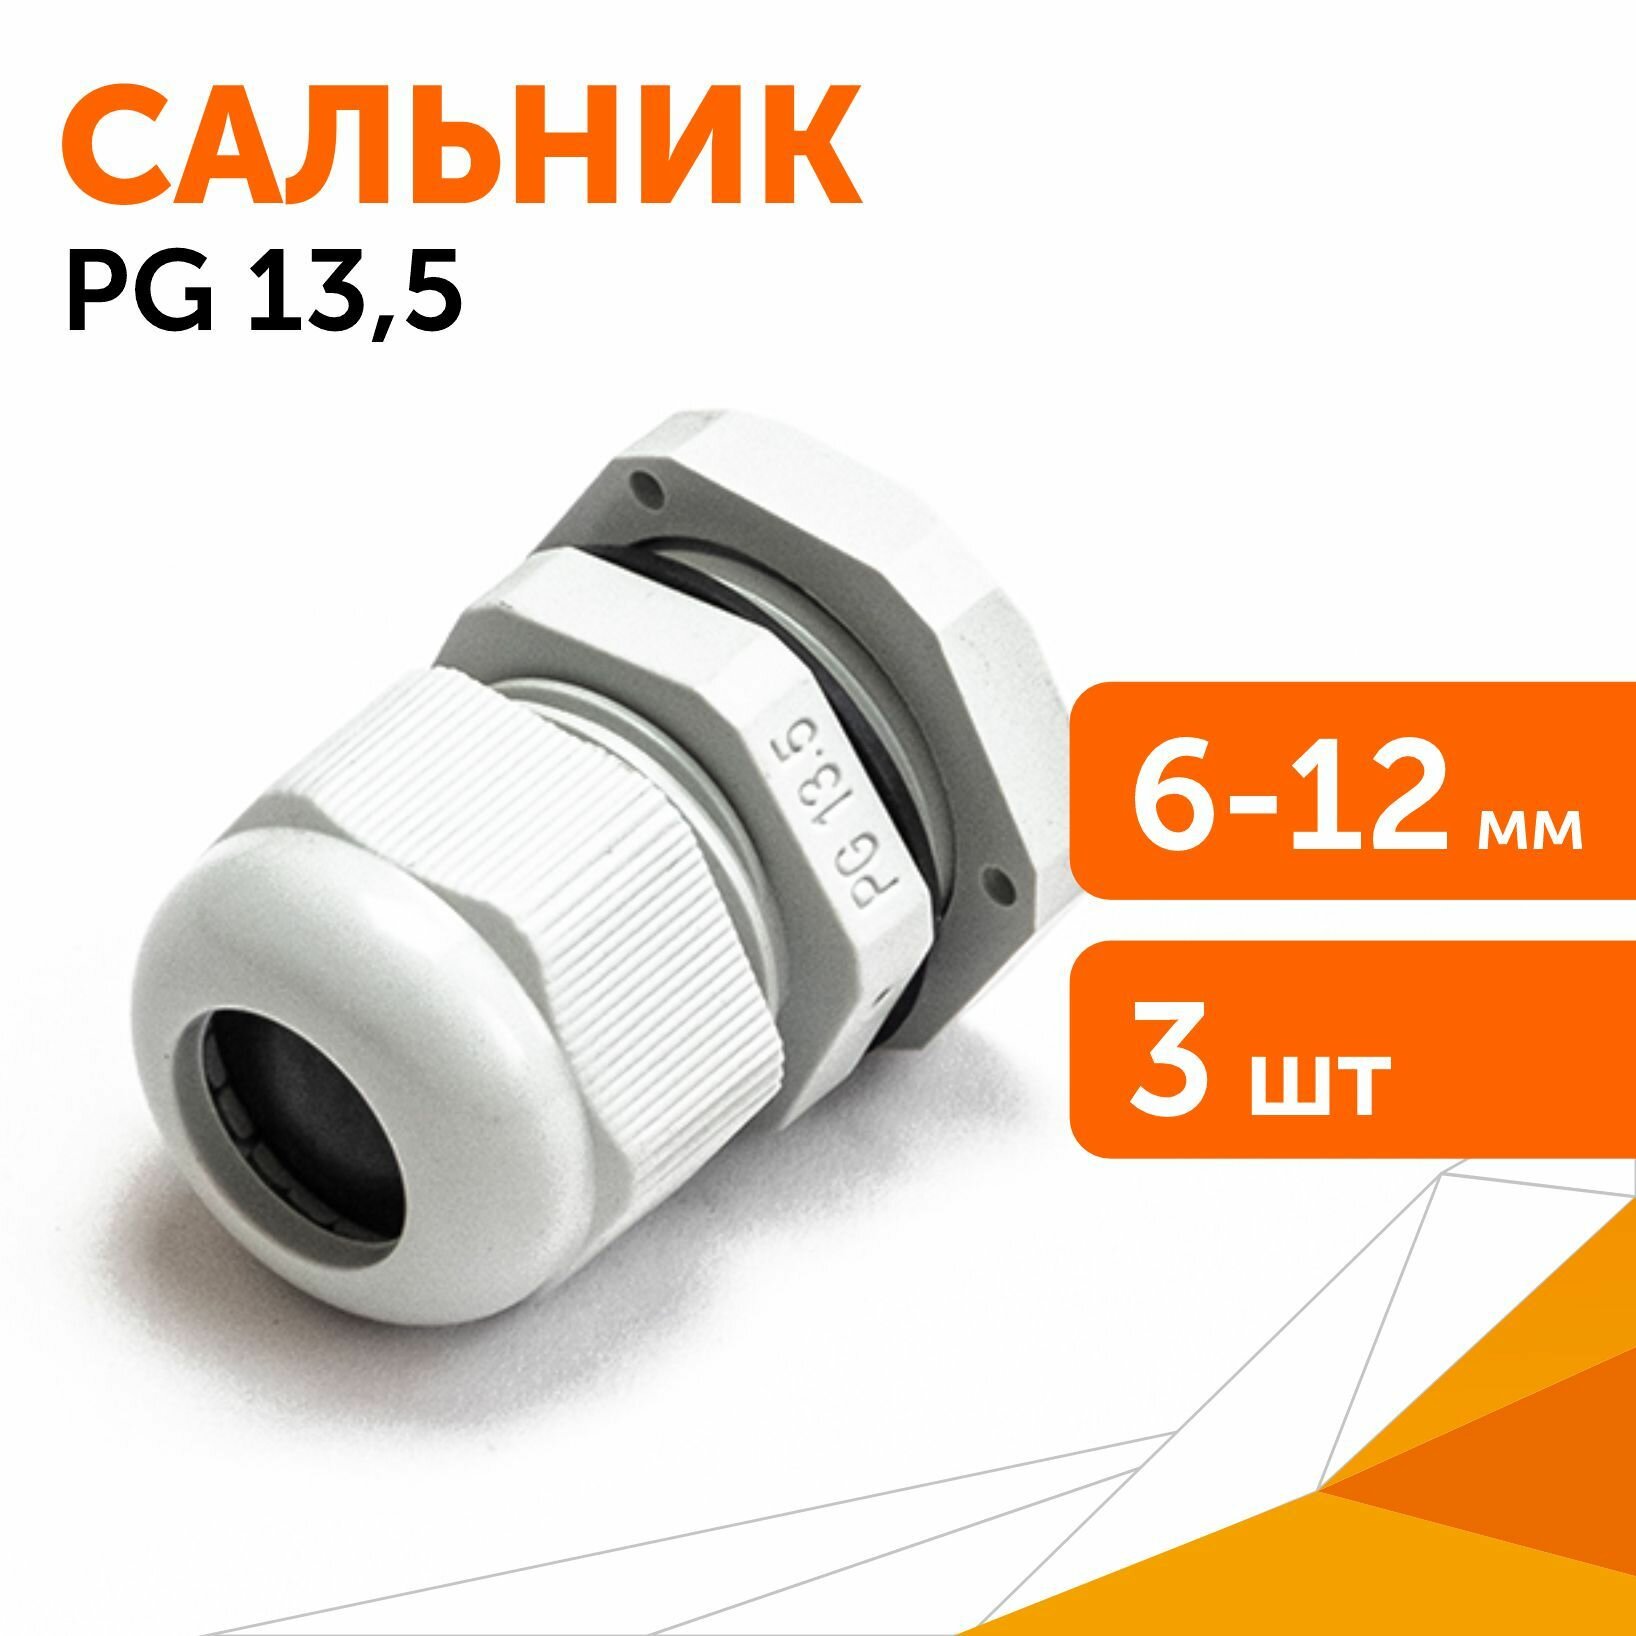 Сальник PG 13.5 (IP68) d отверстия 6-12 мм серый, 3 шт/уп